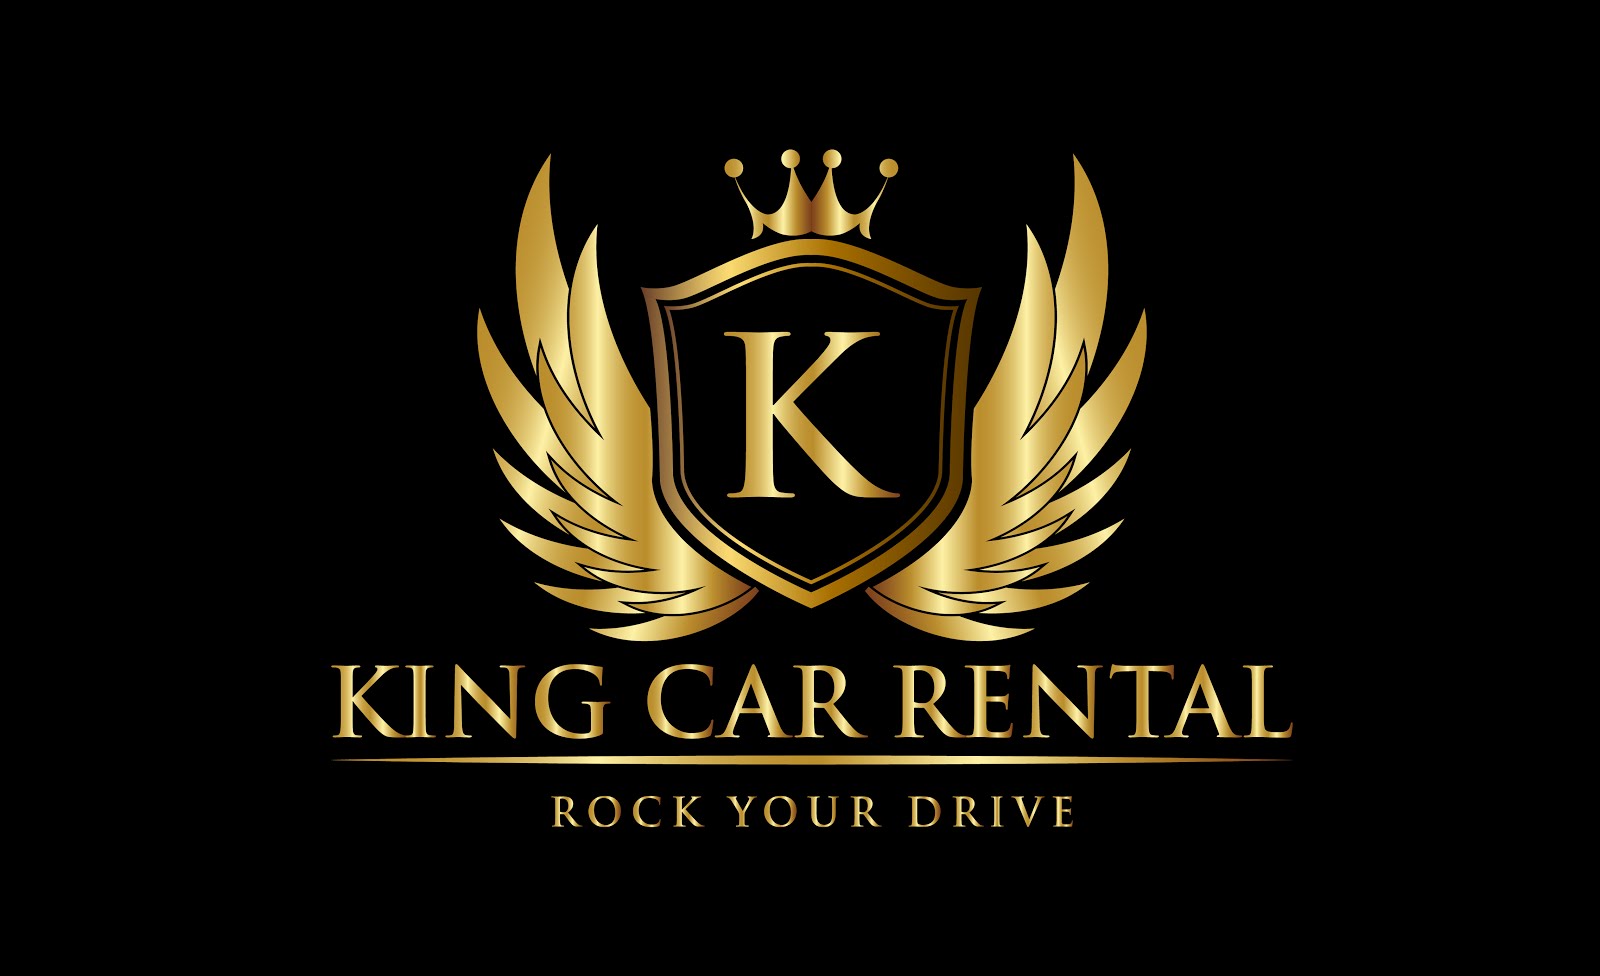 KING CAR RENTAL